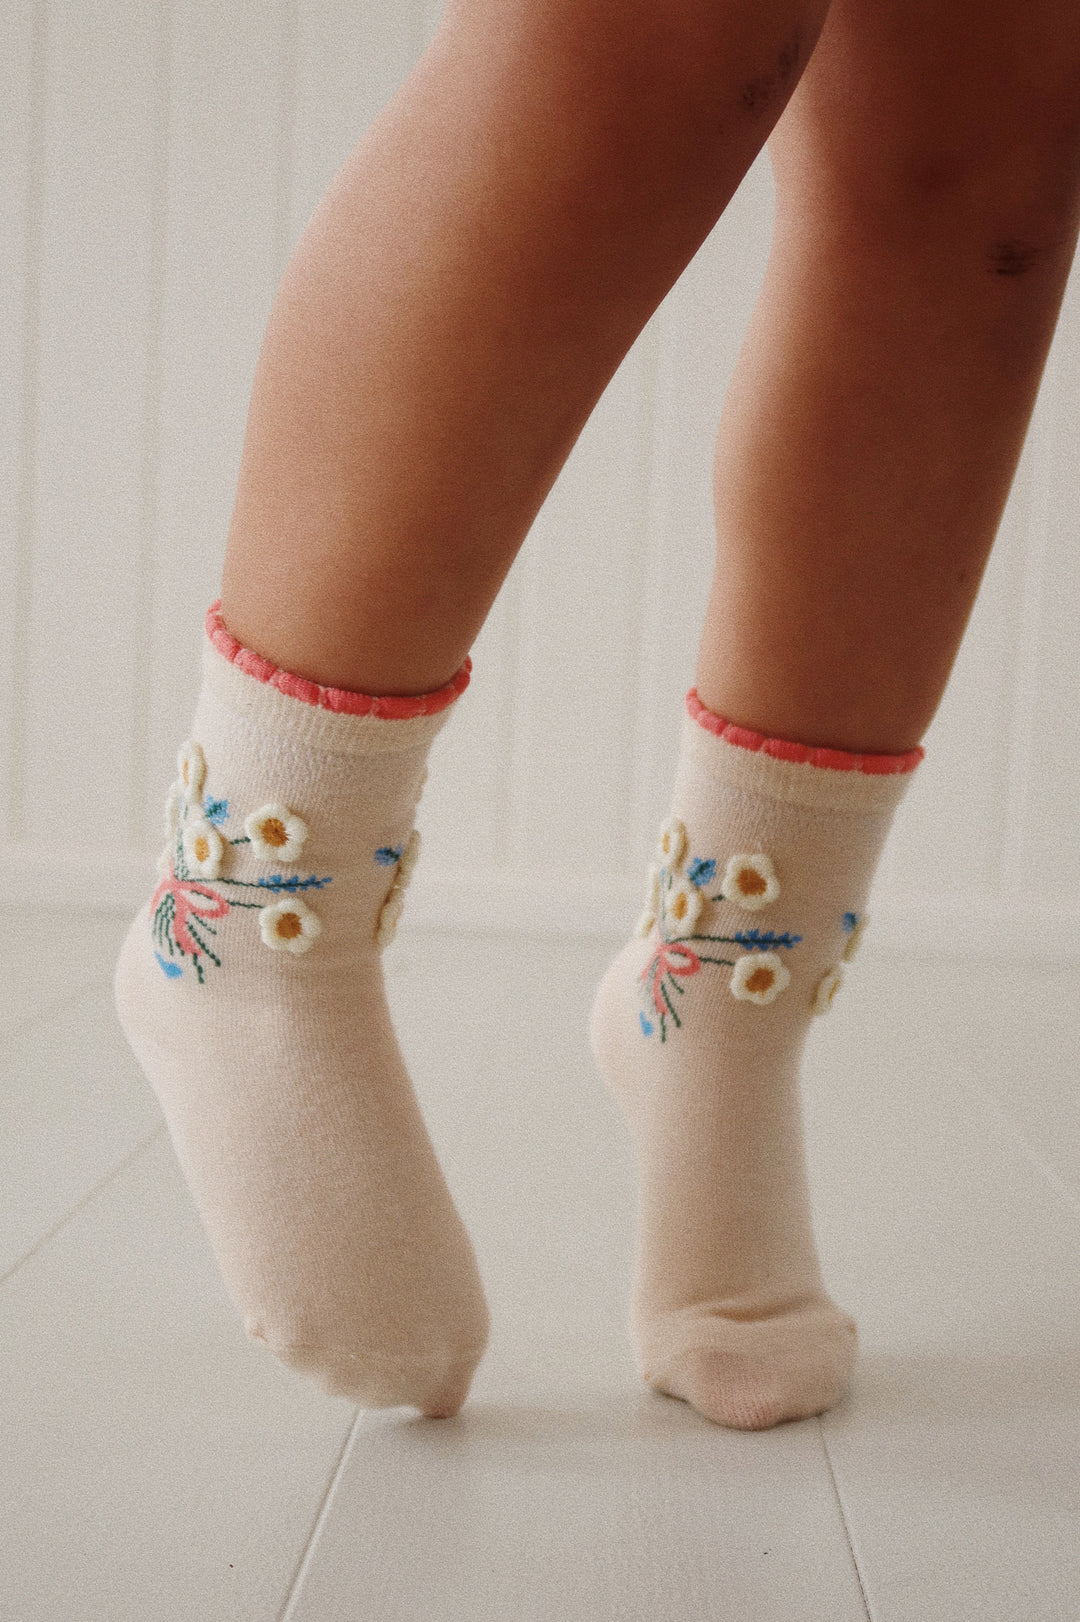 Daisy sokkar, 2 pør